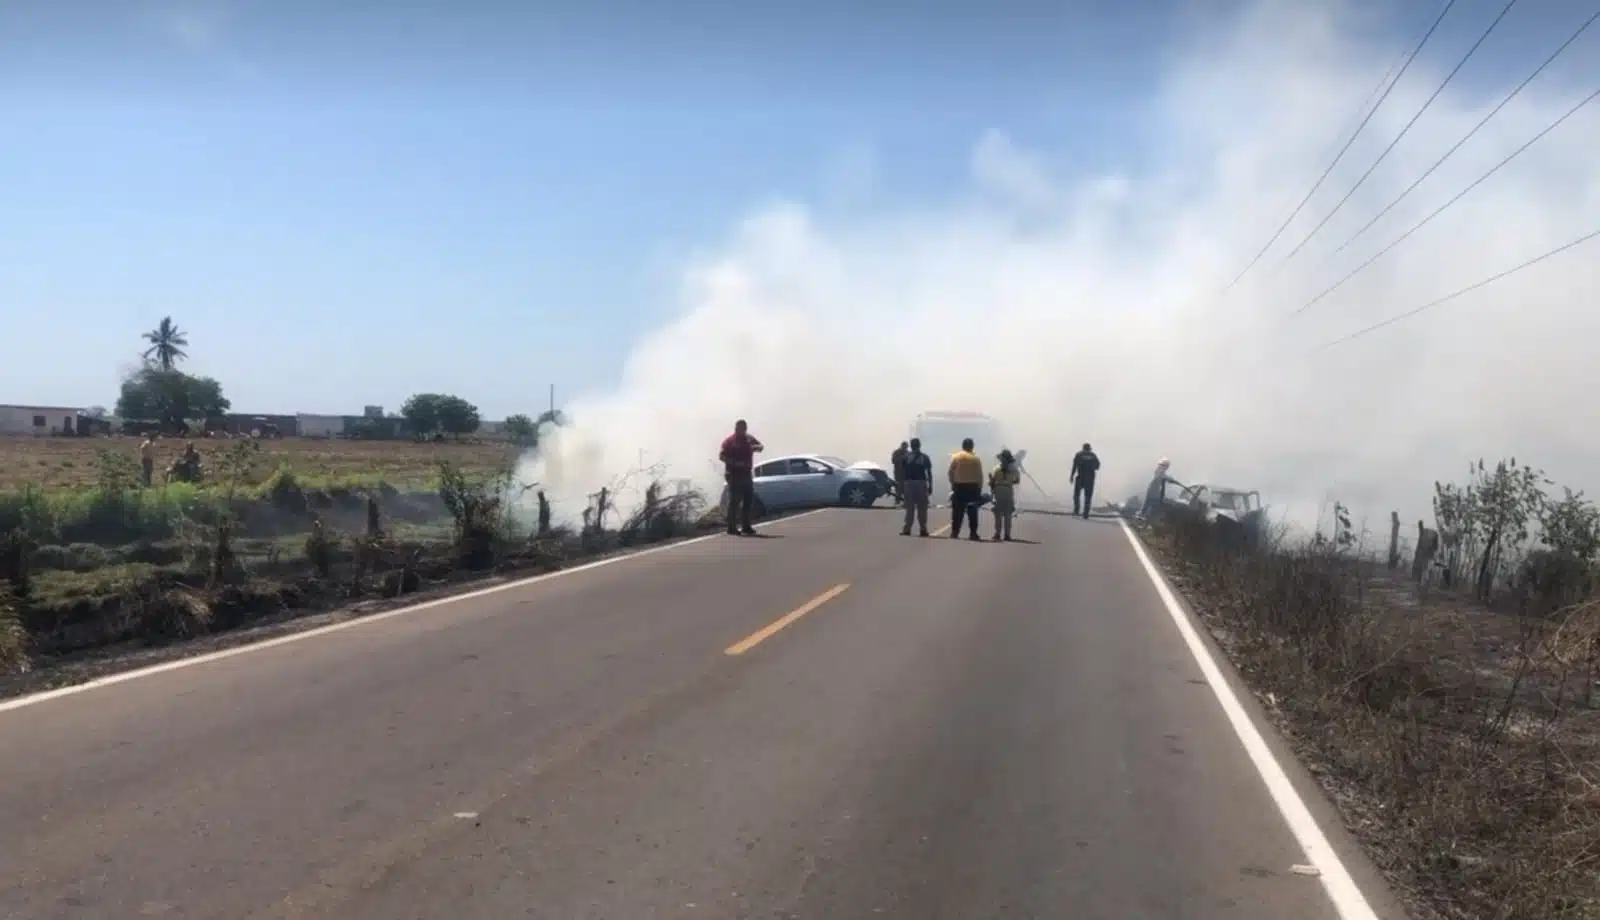 El automóvil March terminó a un costado de la carretera y se incendió, por lo que la conductora perdió la vida.